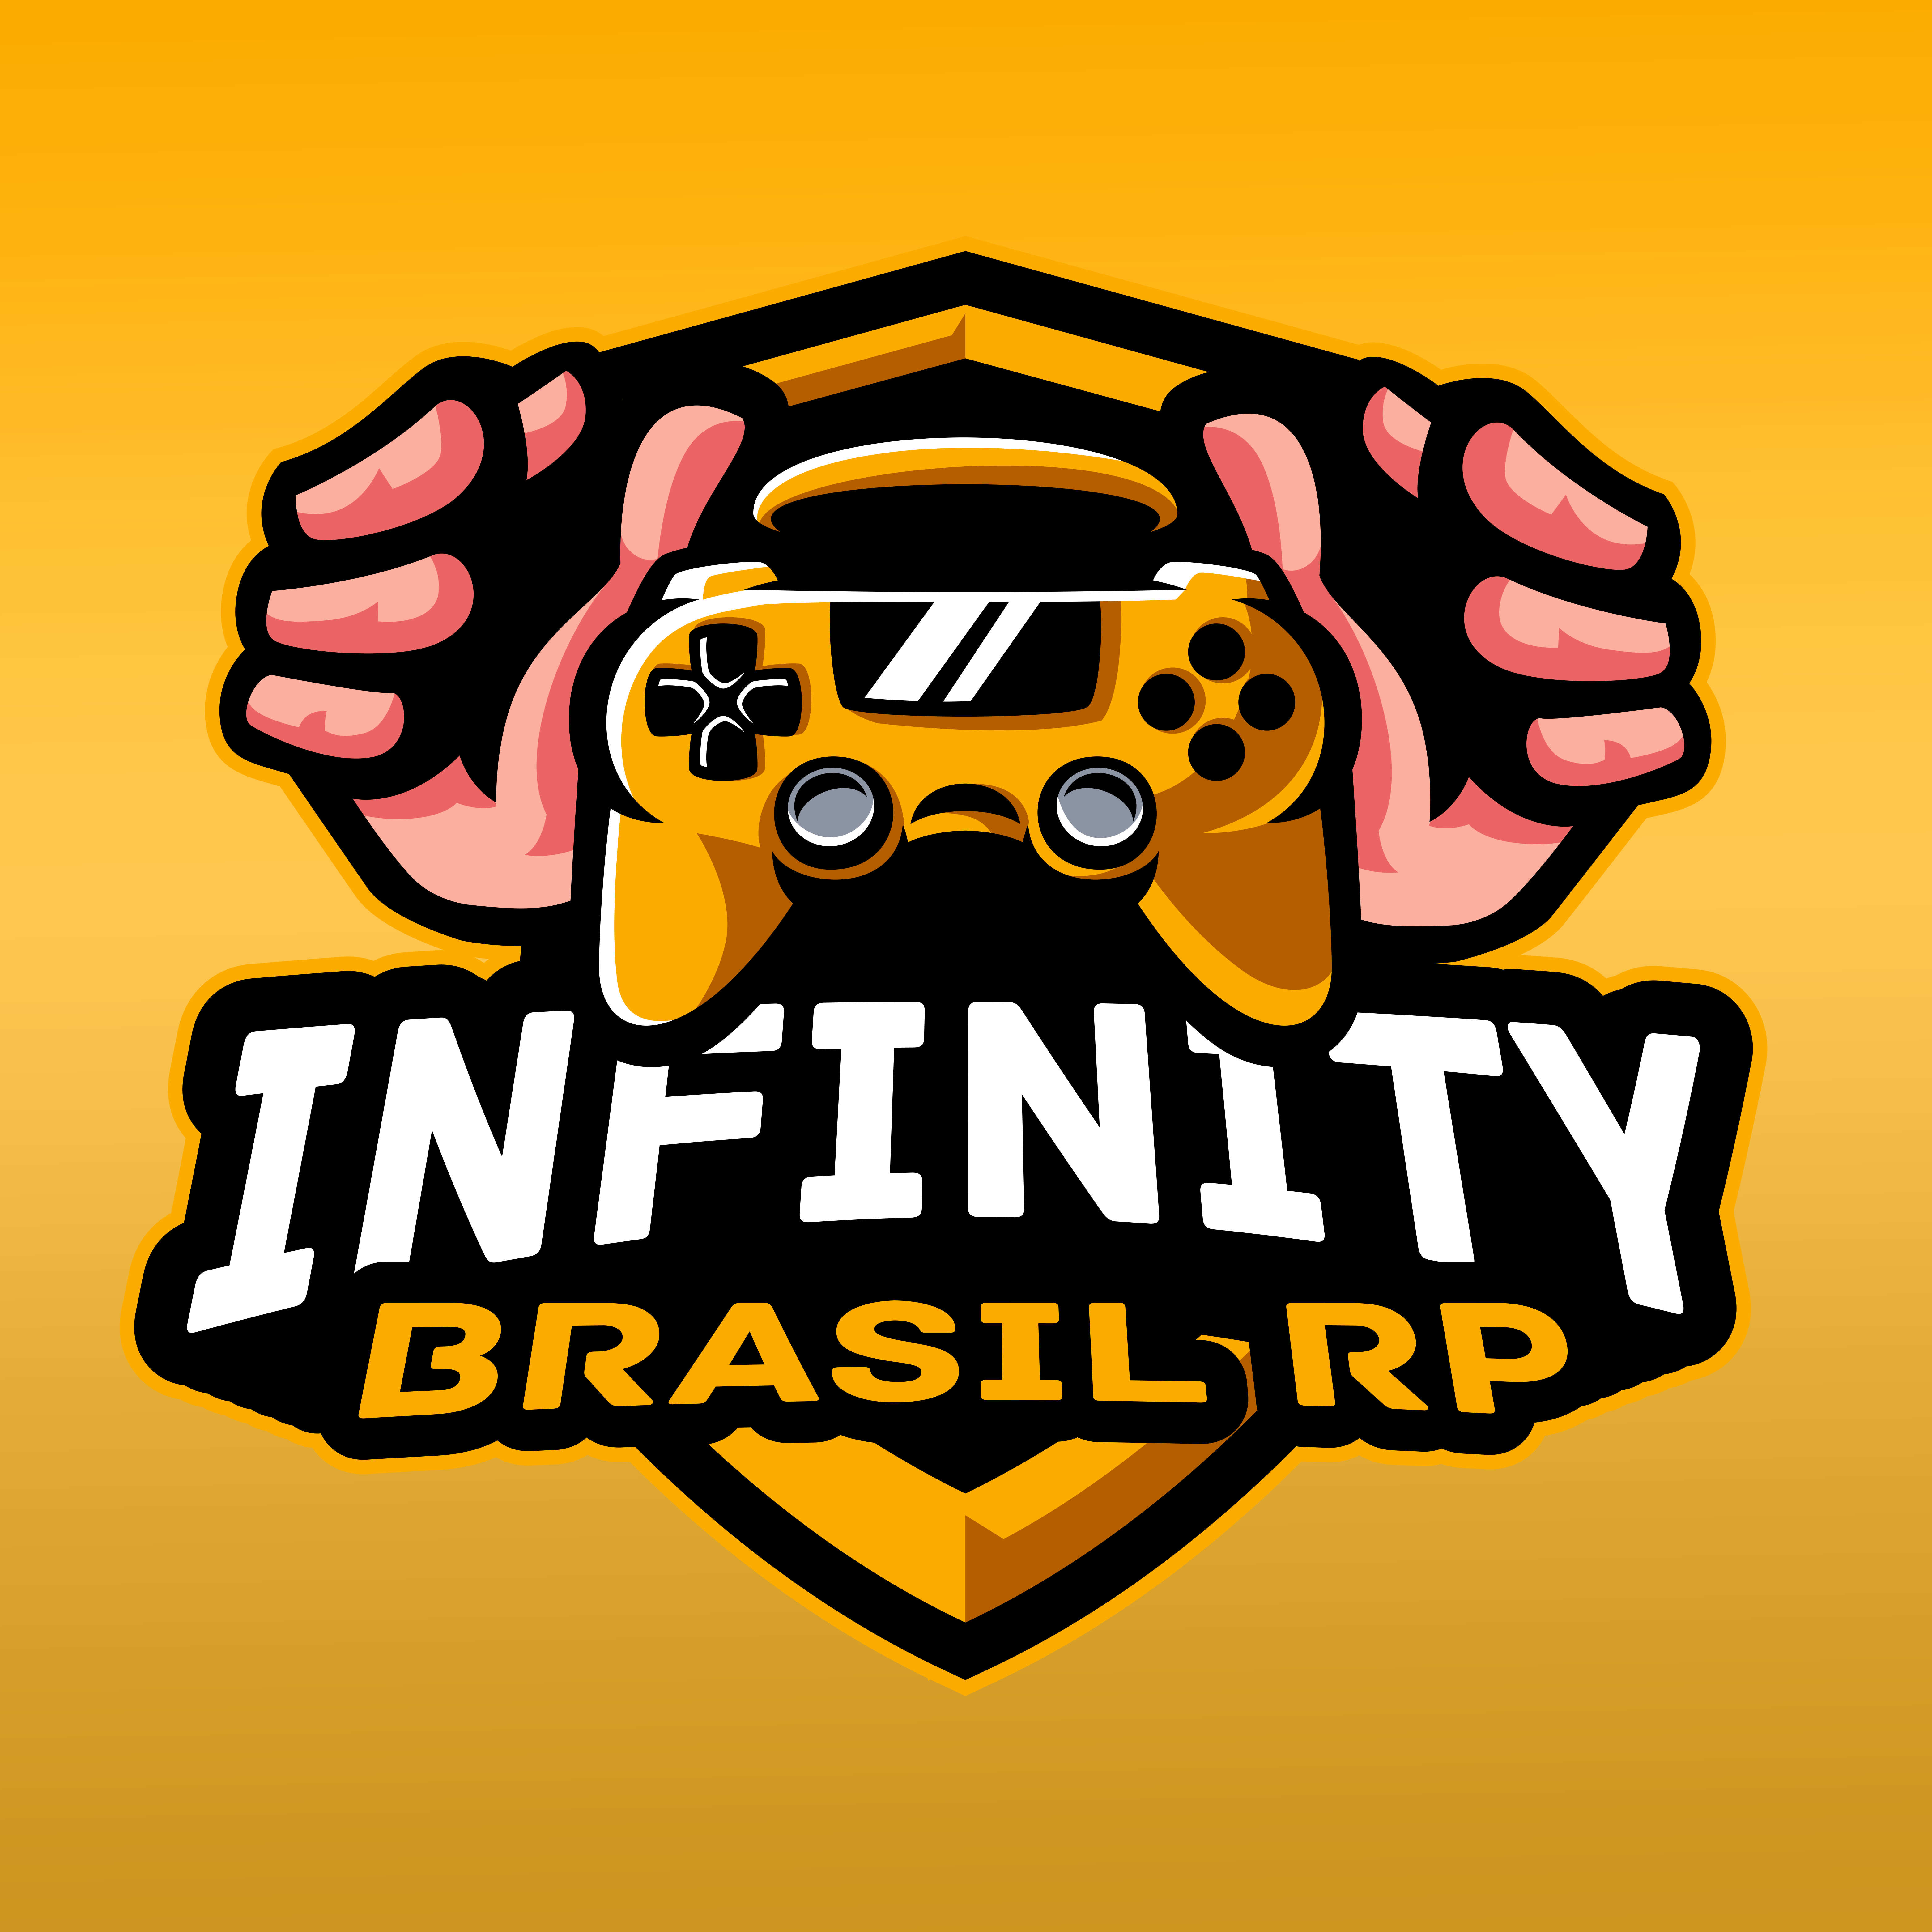 Infinity Brasil